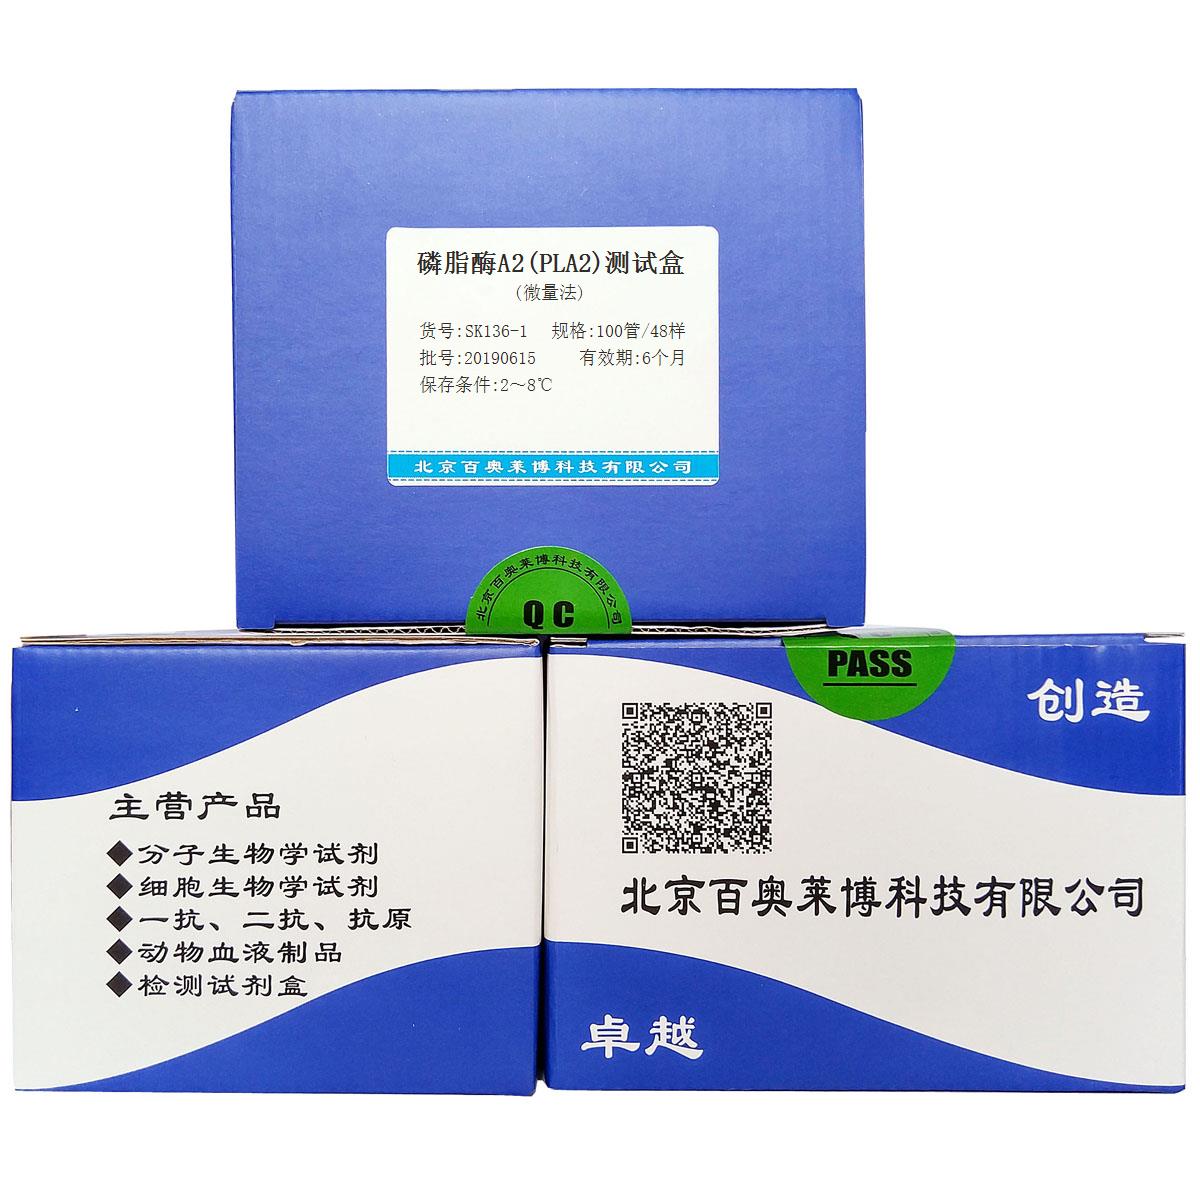 磷脂酶A2(PLA2)测试盒(微量法)北京现货